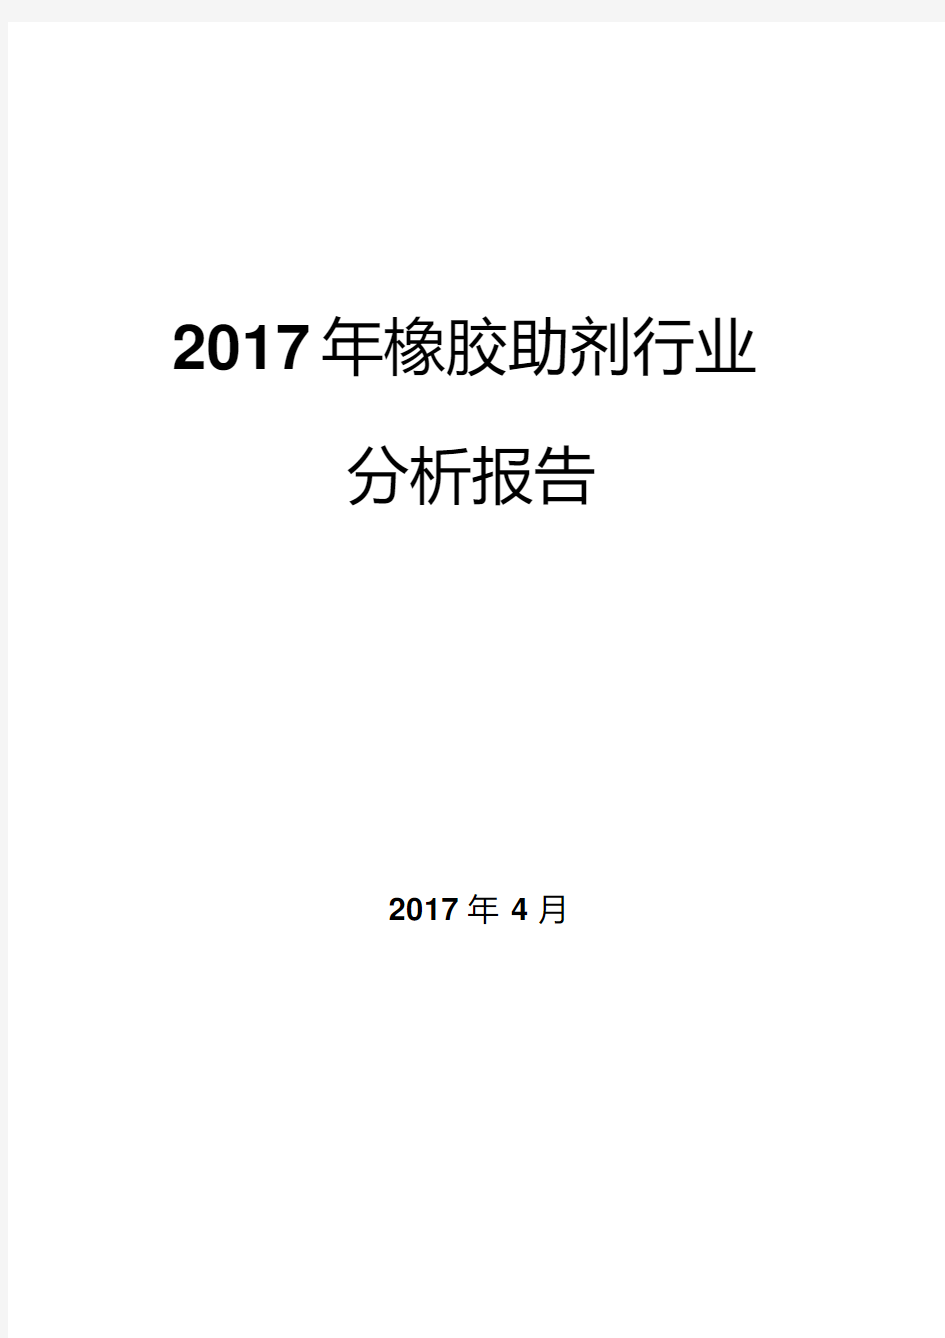 2017年橡胶助剂行业分析报告